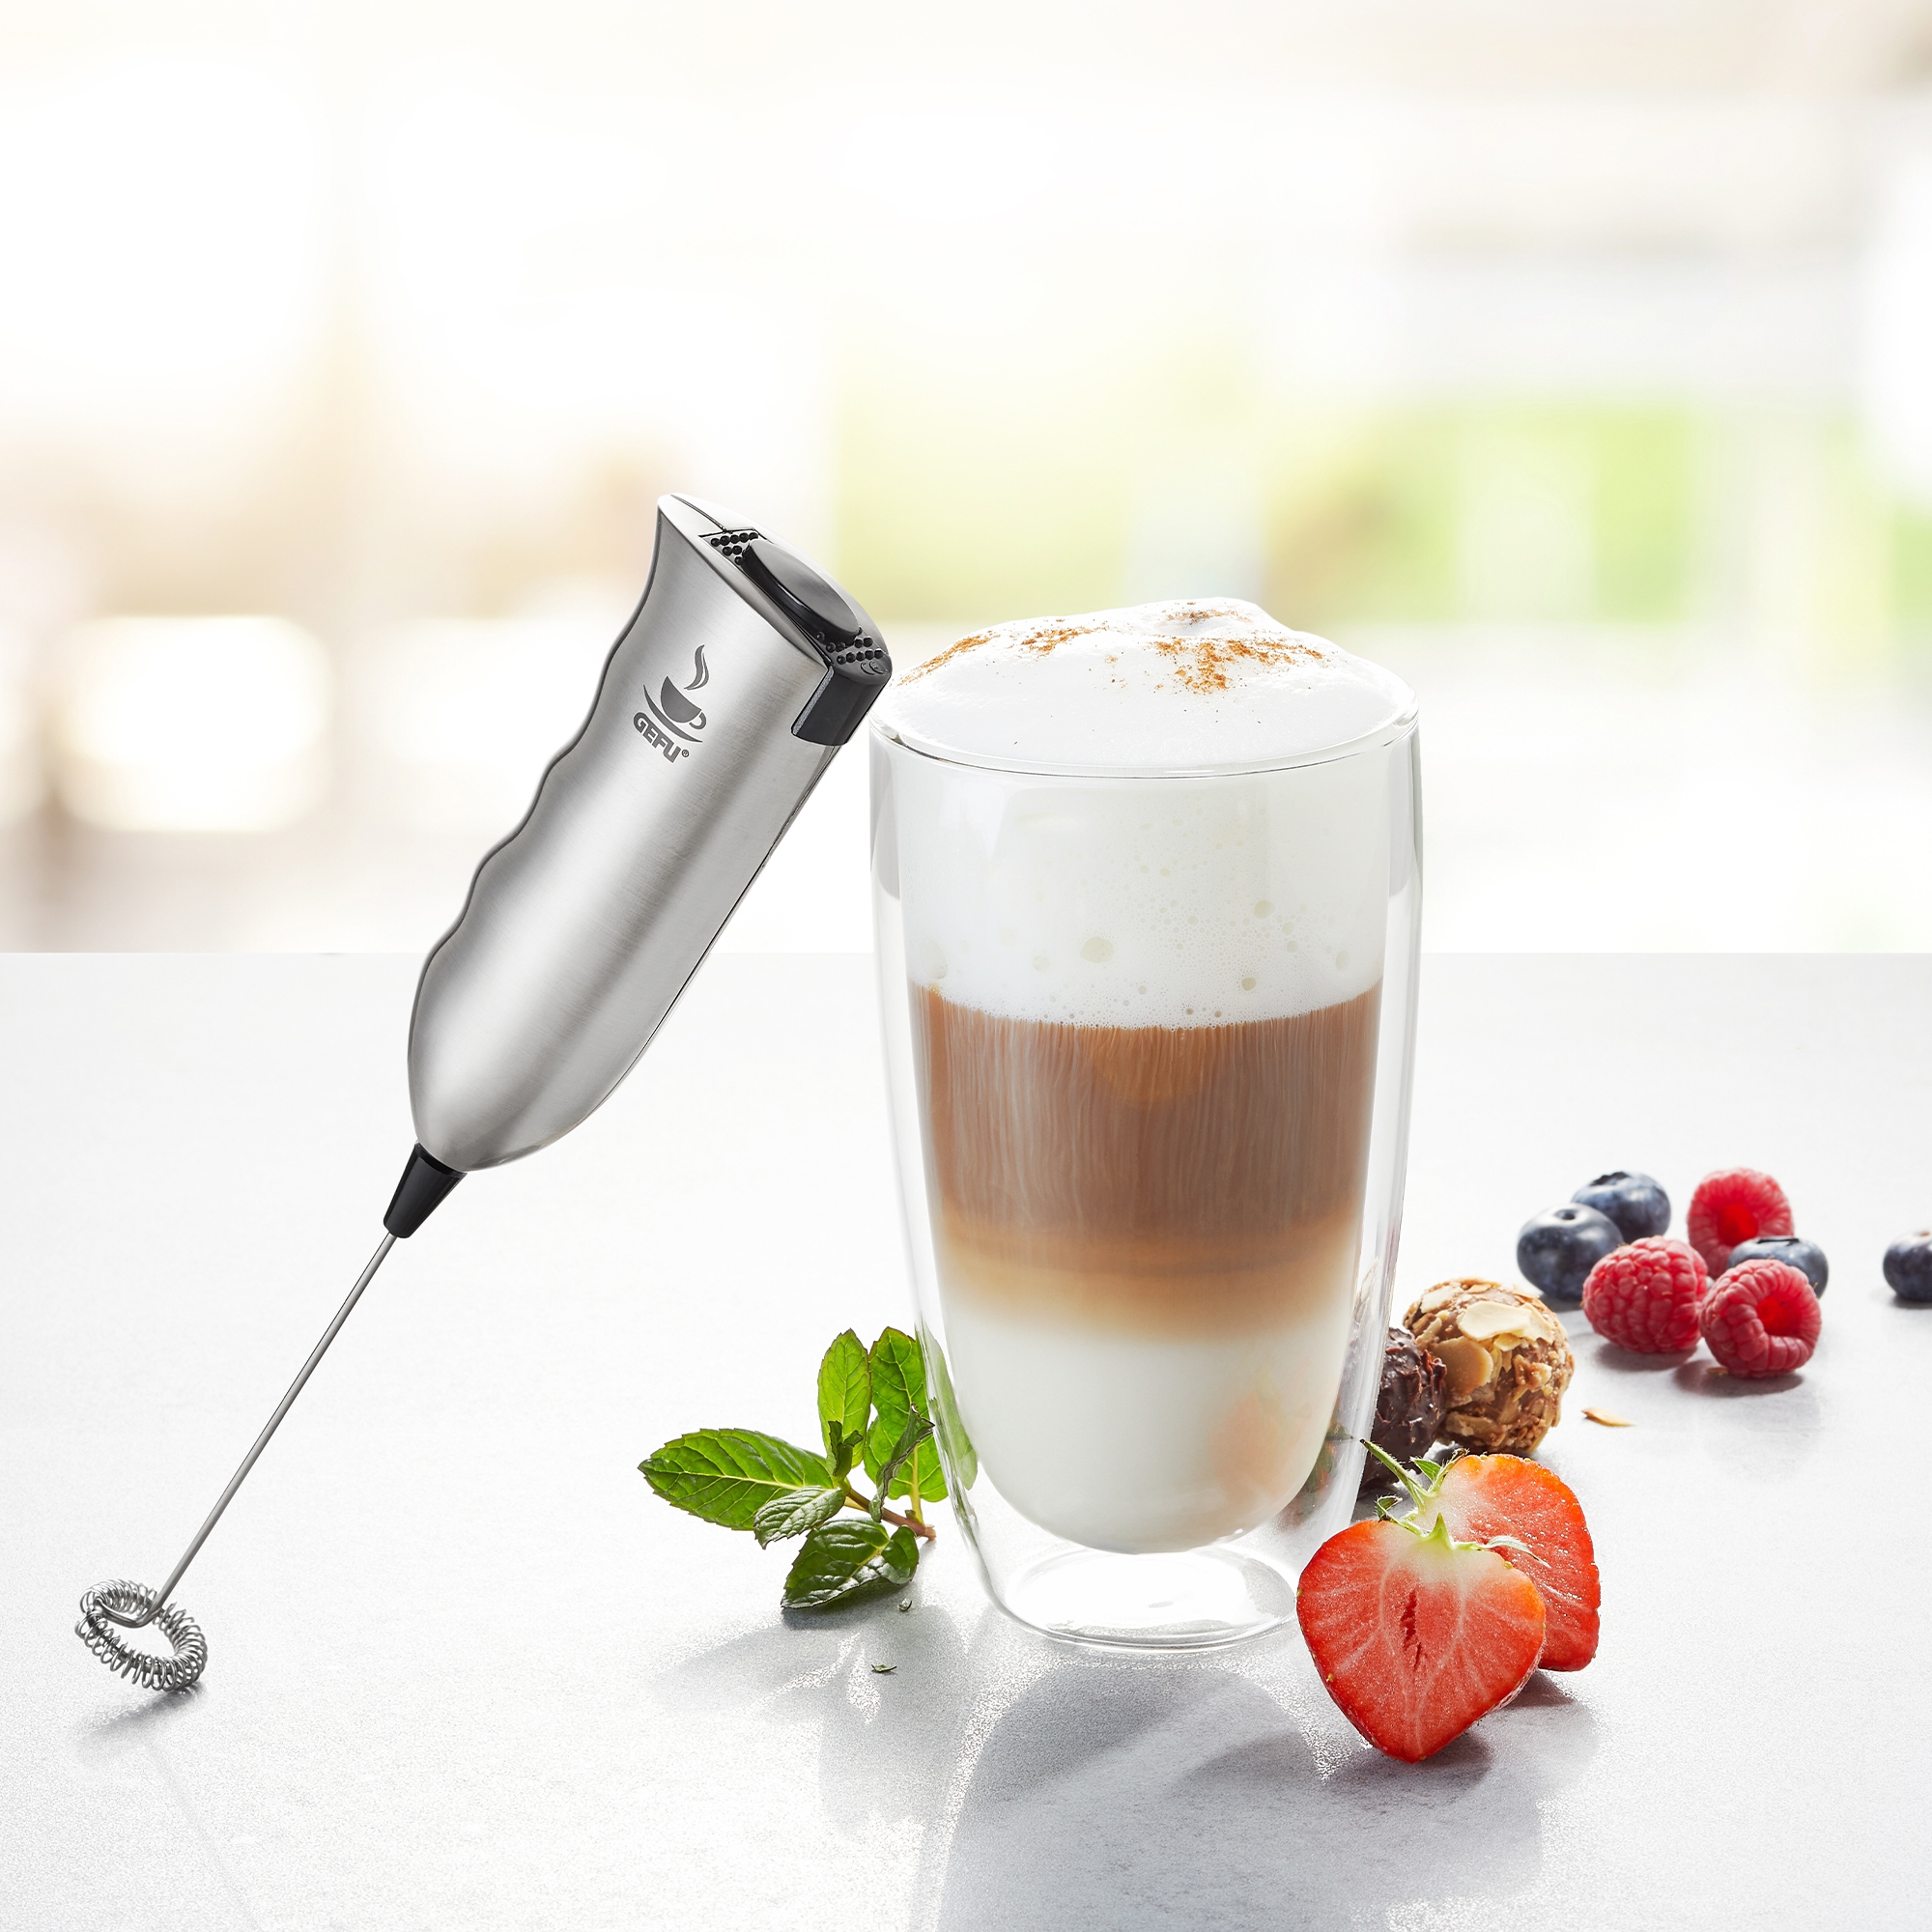 Gefu - milk frother MARCELLO + latte macchiato glass